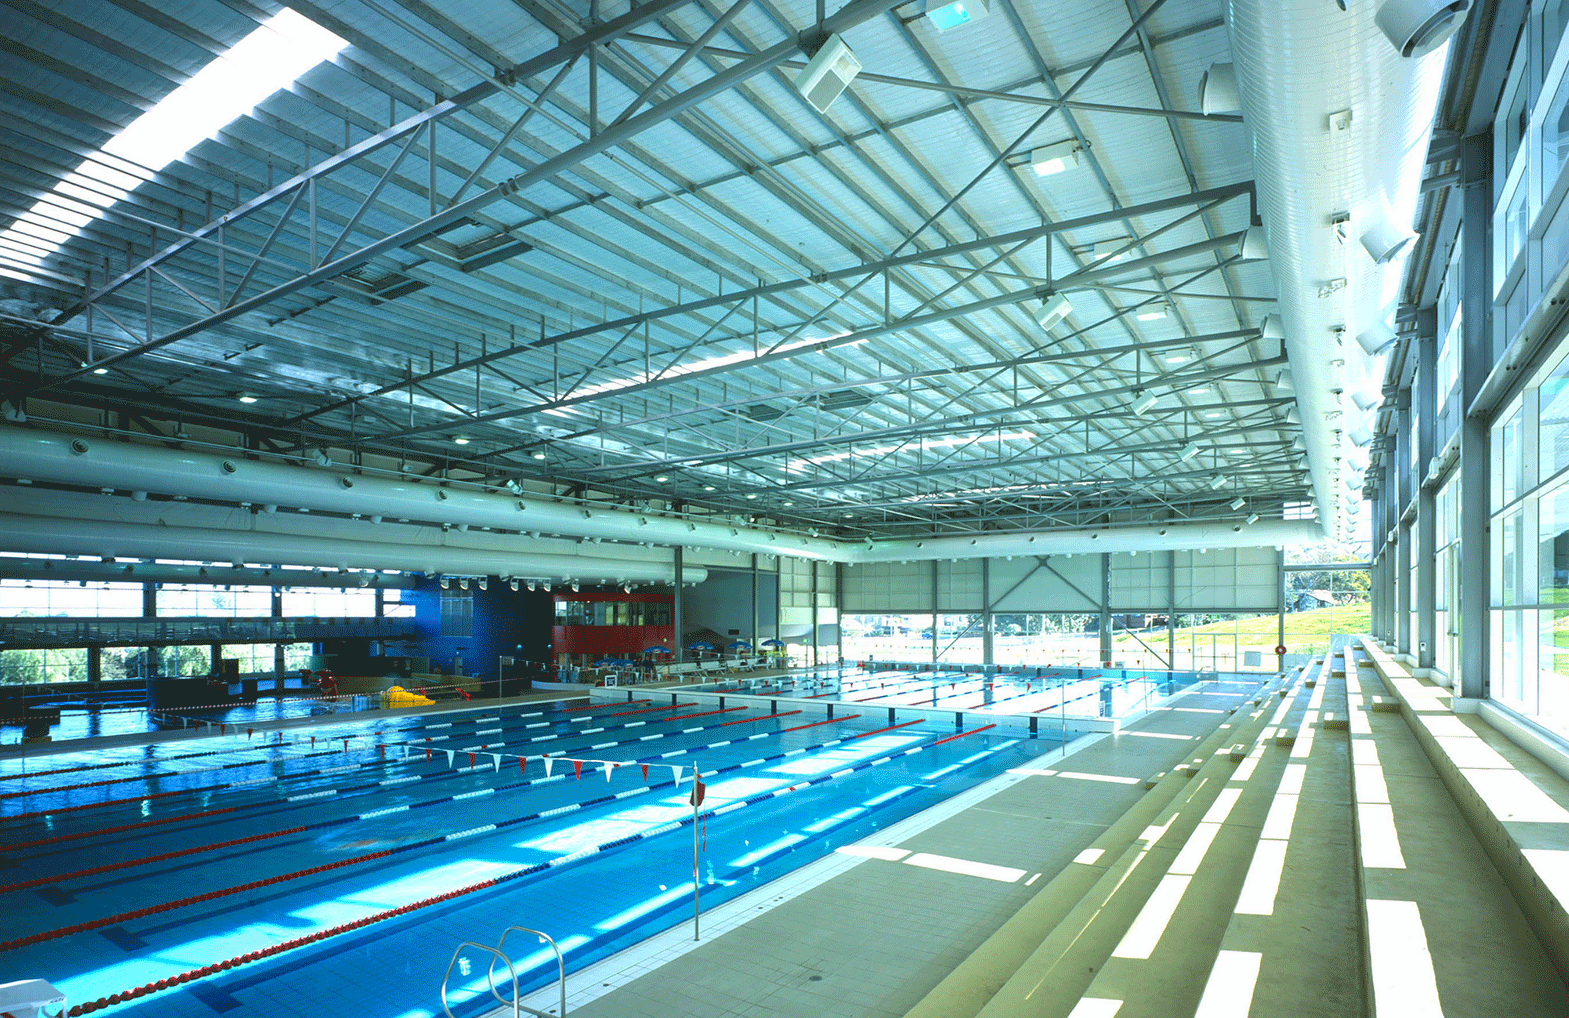 Ryde Aquatic Centre